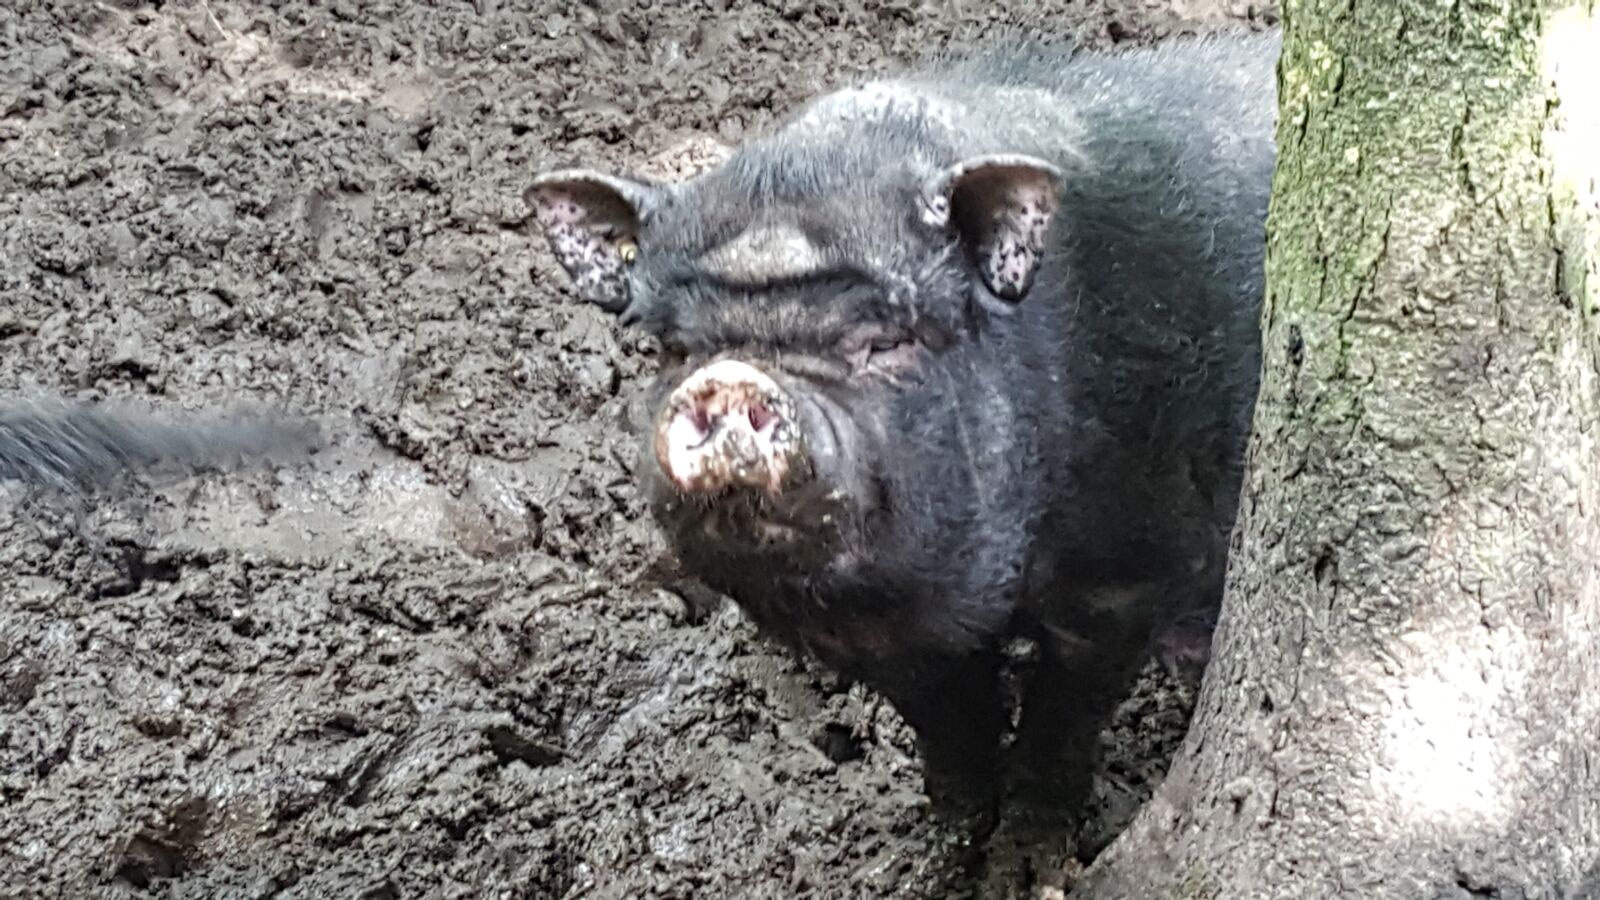 Samsung Galaxy S6 sample photo. Pig, hängebauchschwein, animal photography